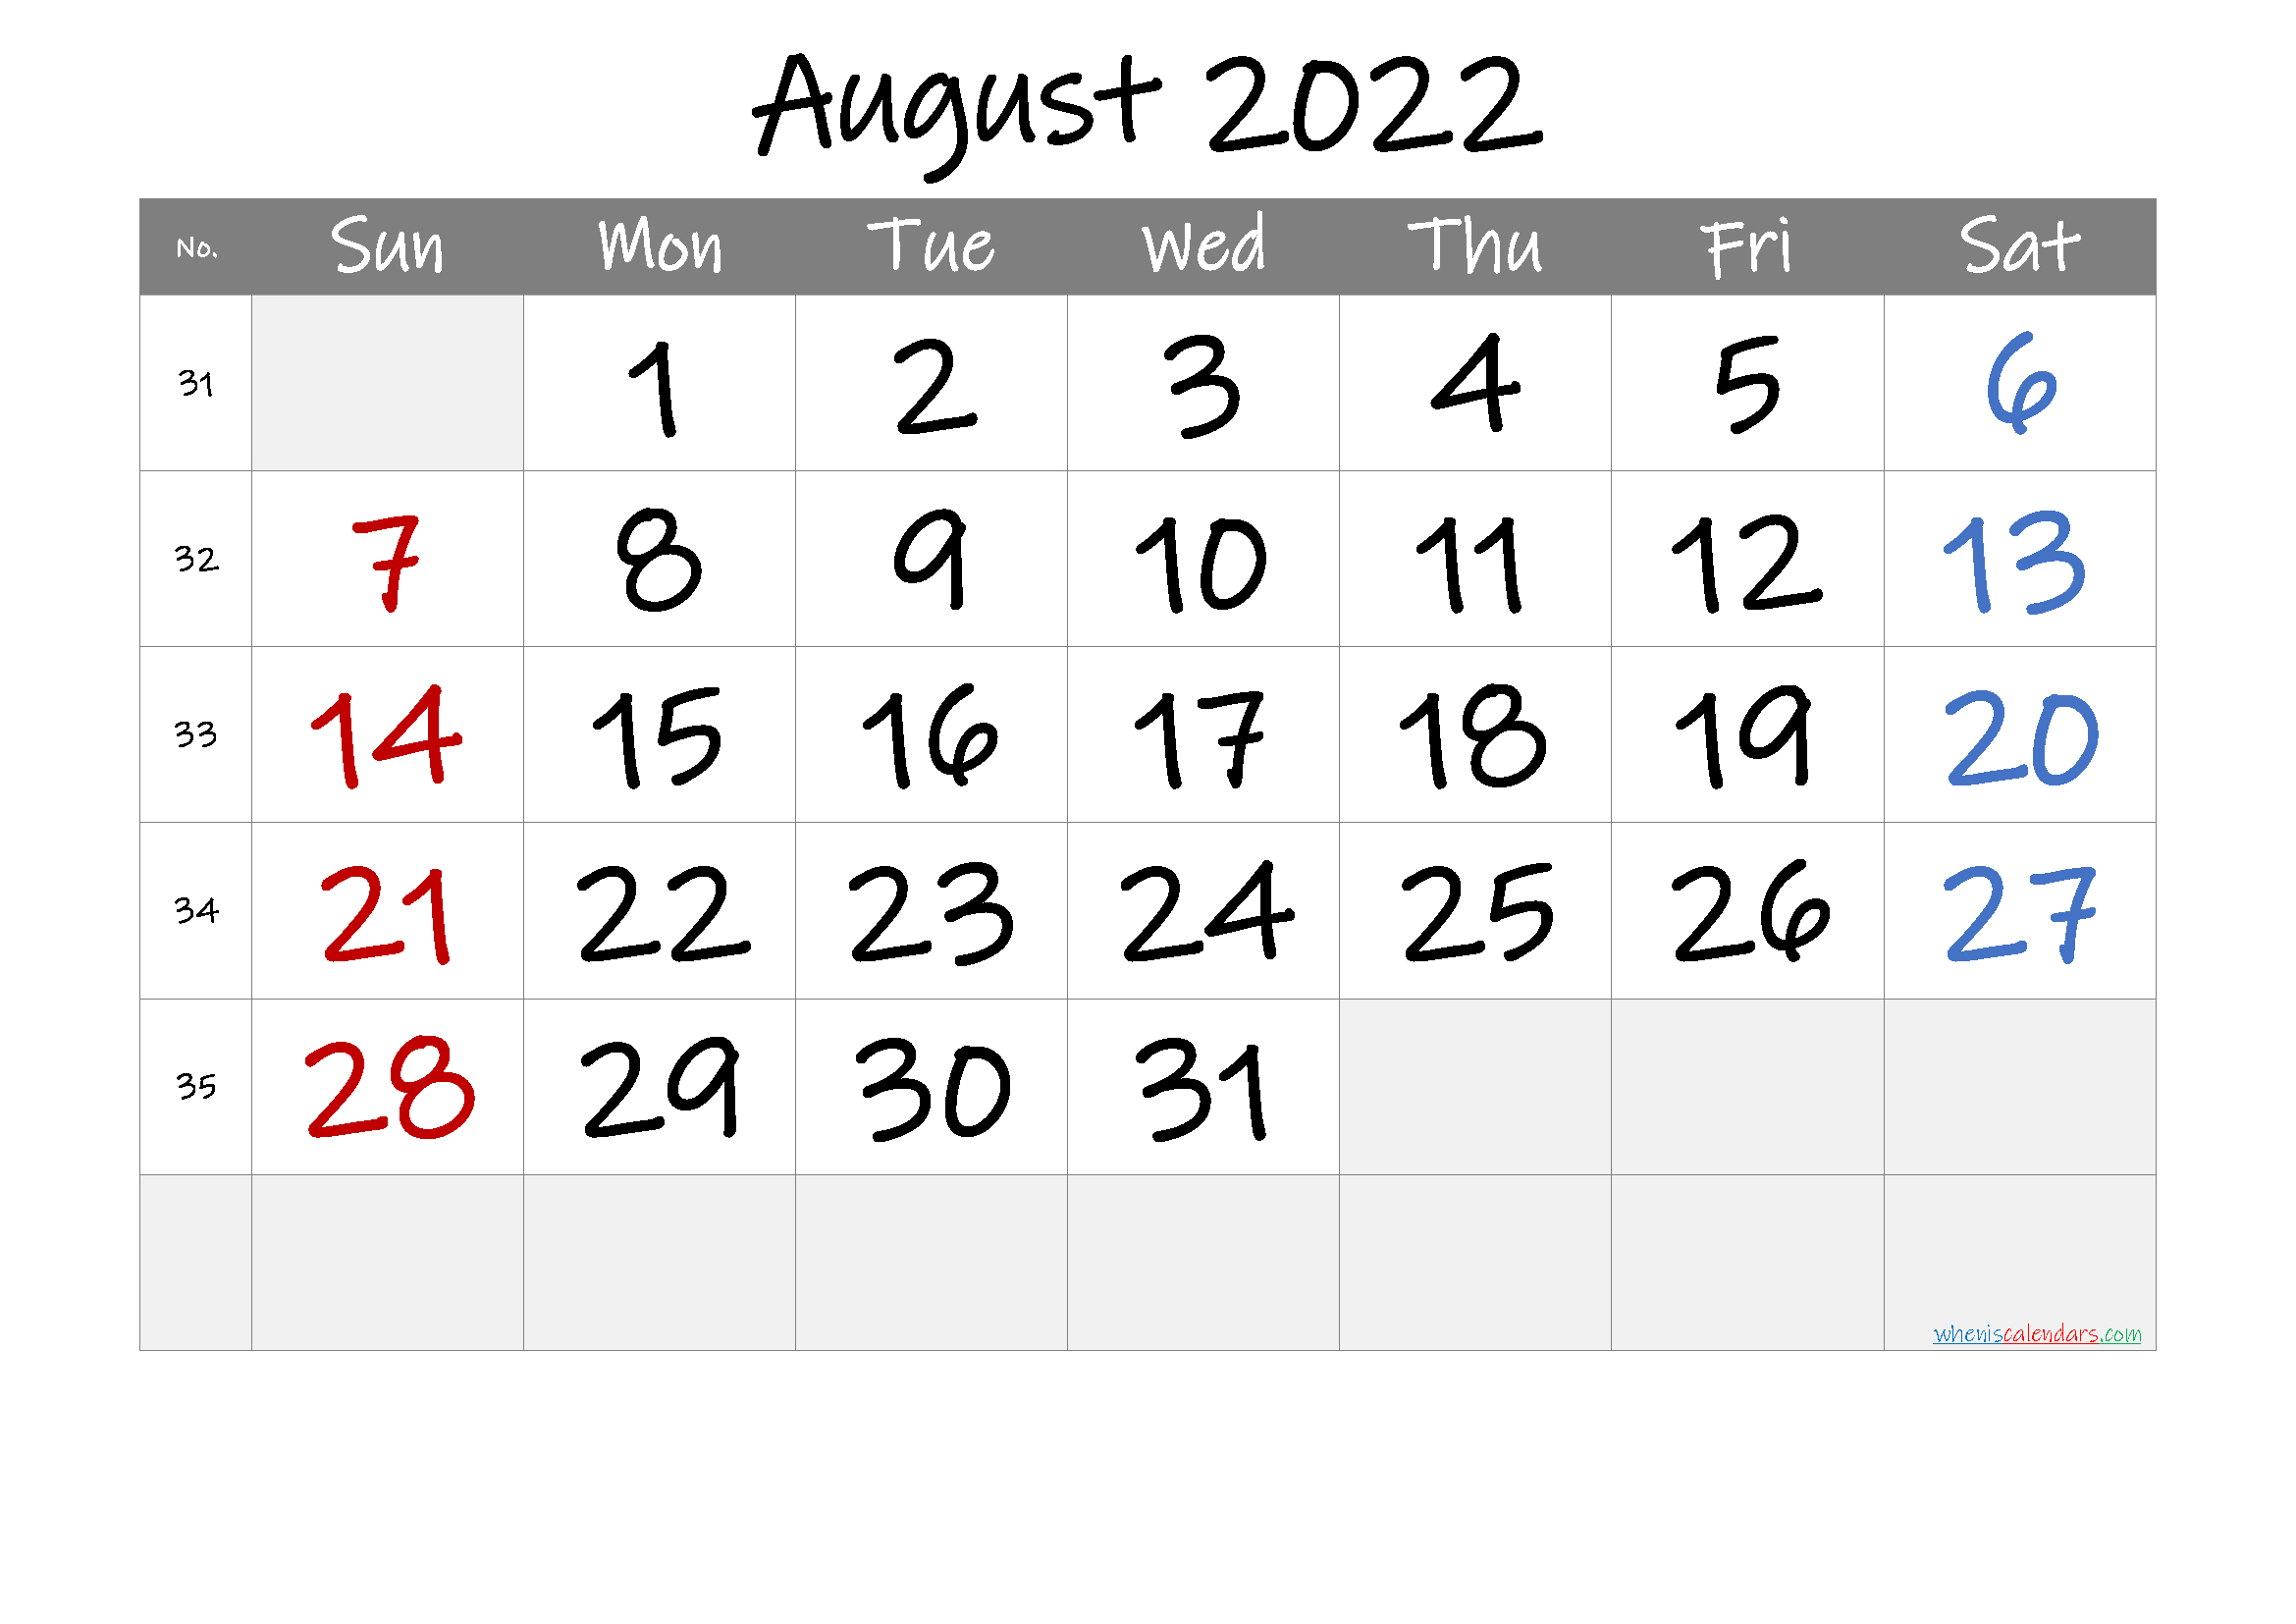 Get August 2022 Jewish Calendar